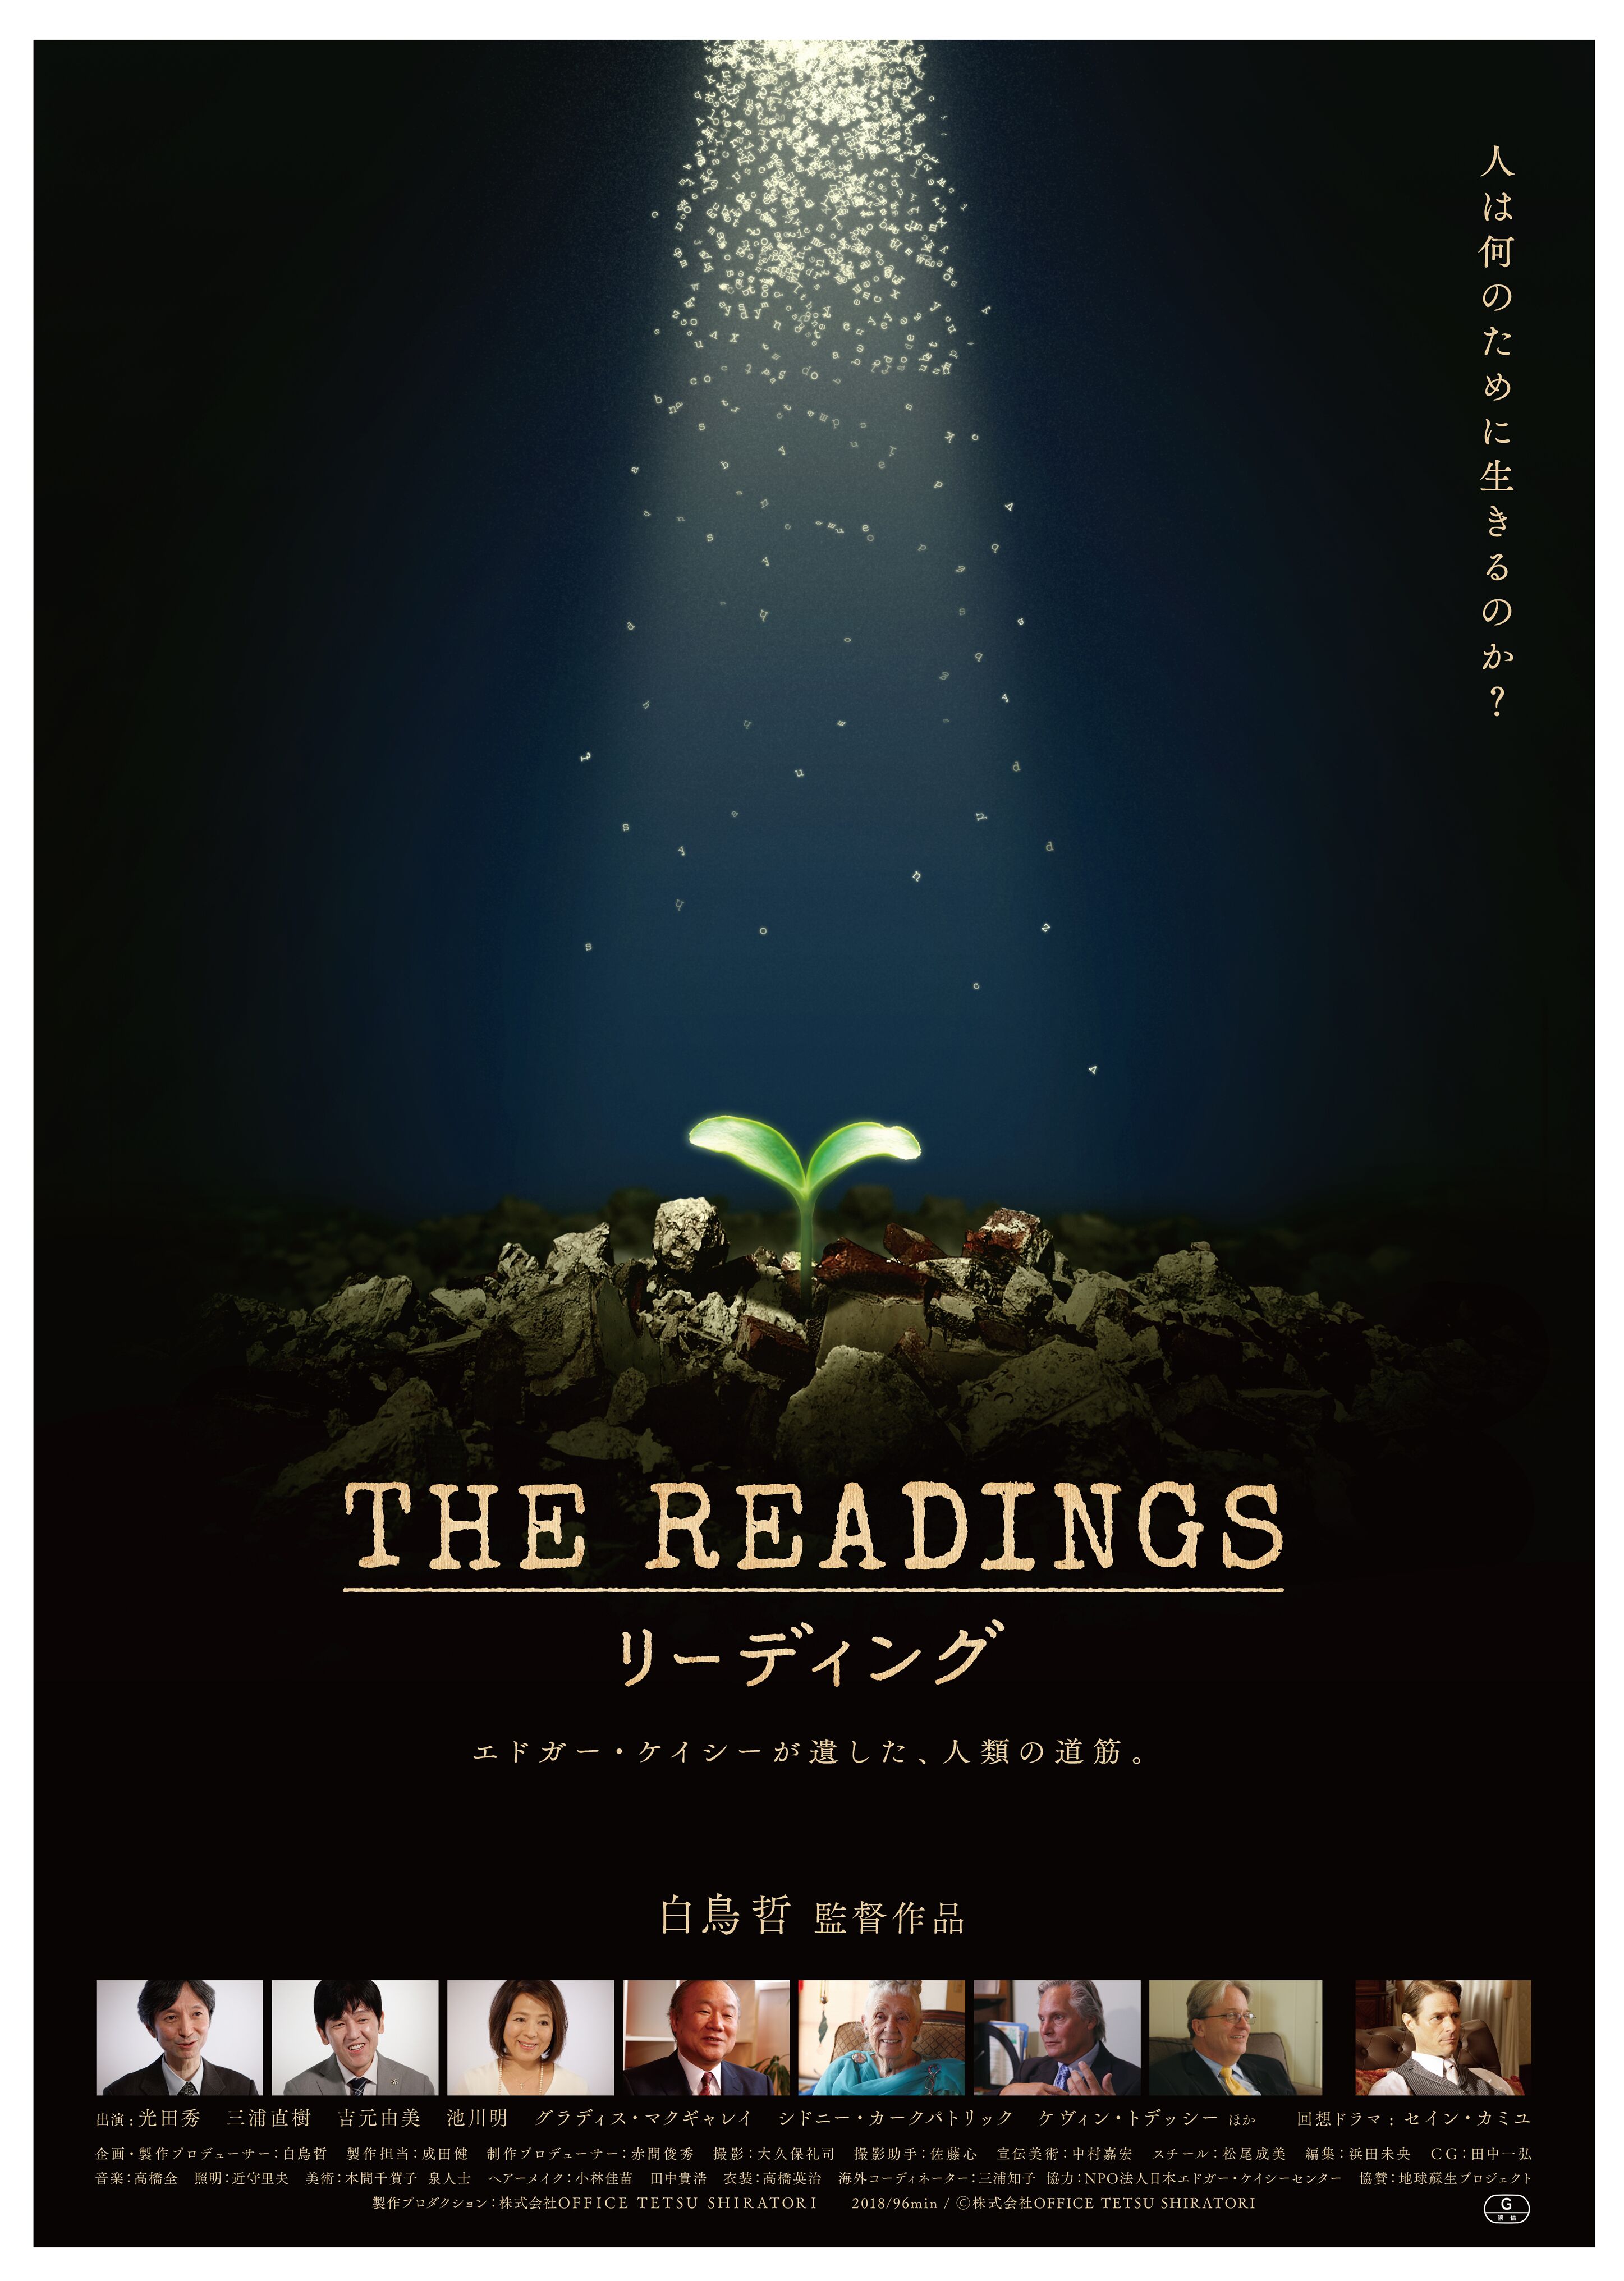 映画『THE READINGS』のポスター